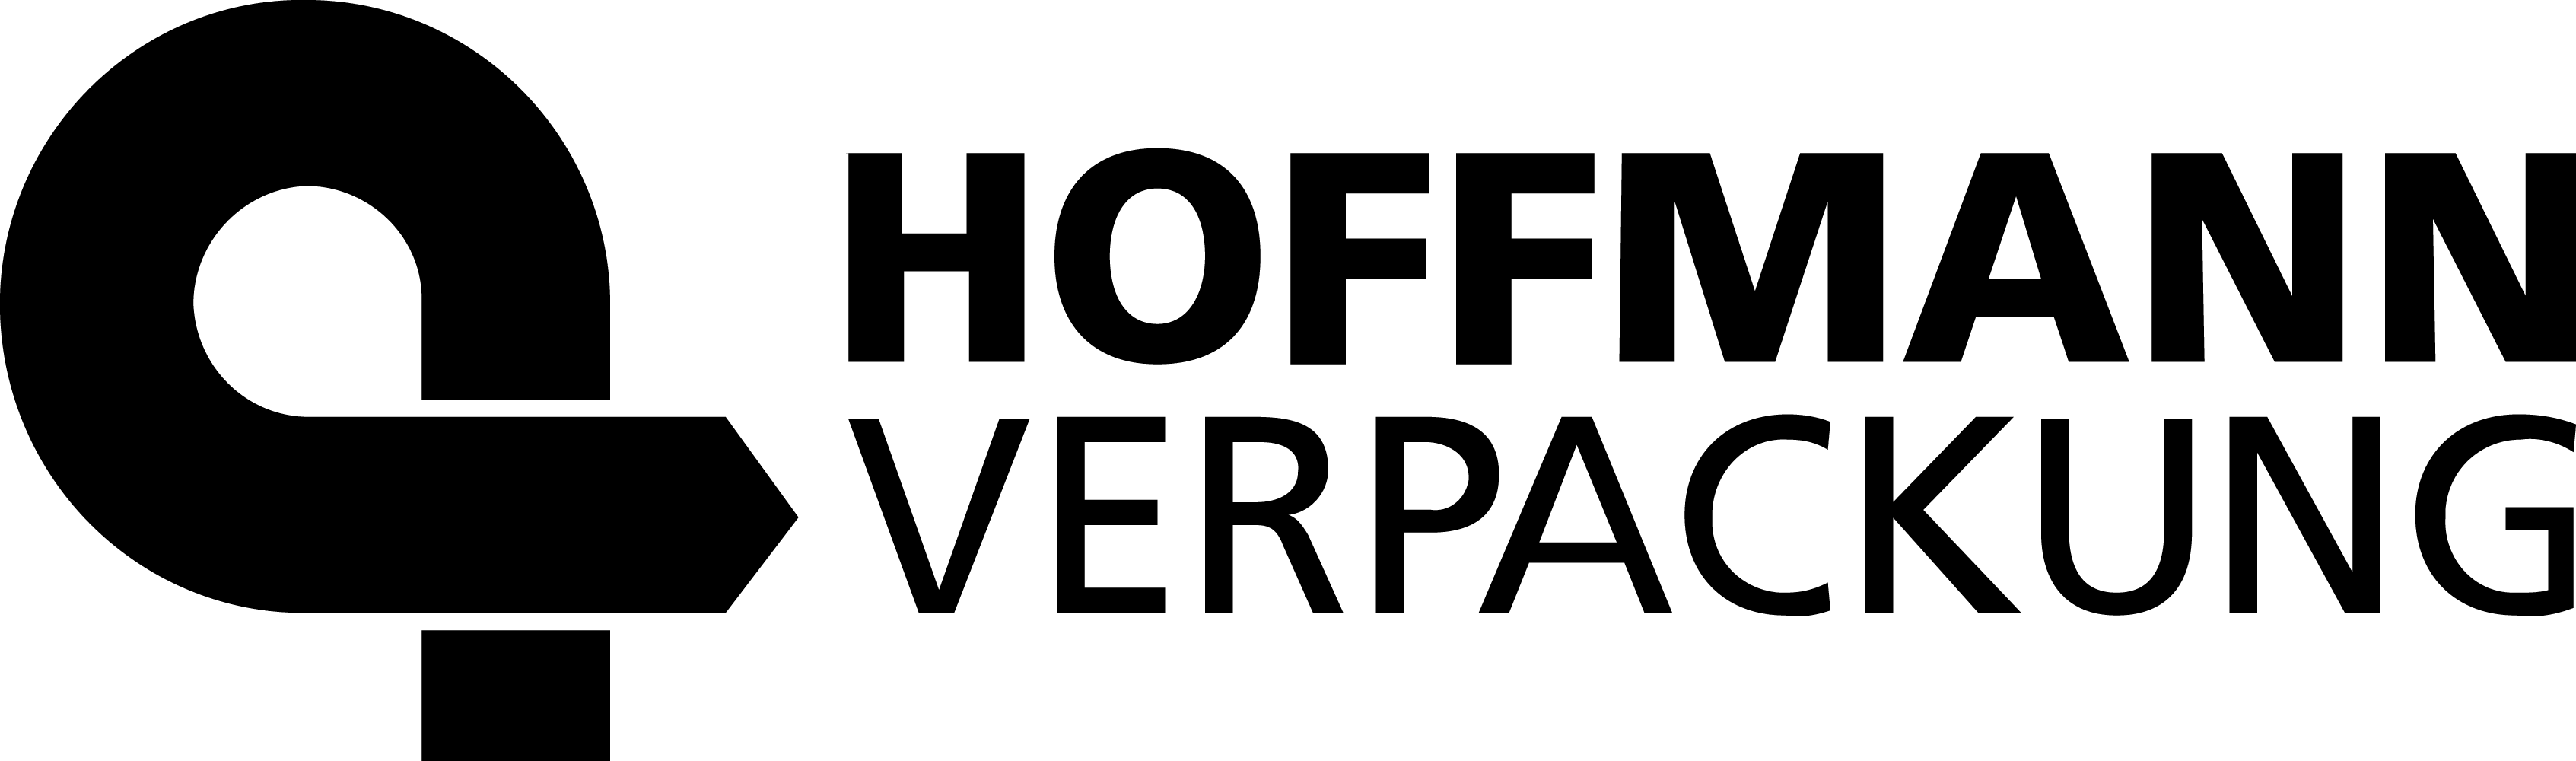 Hoffmann Verpackung Logo